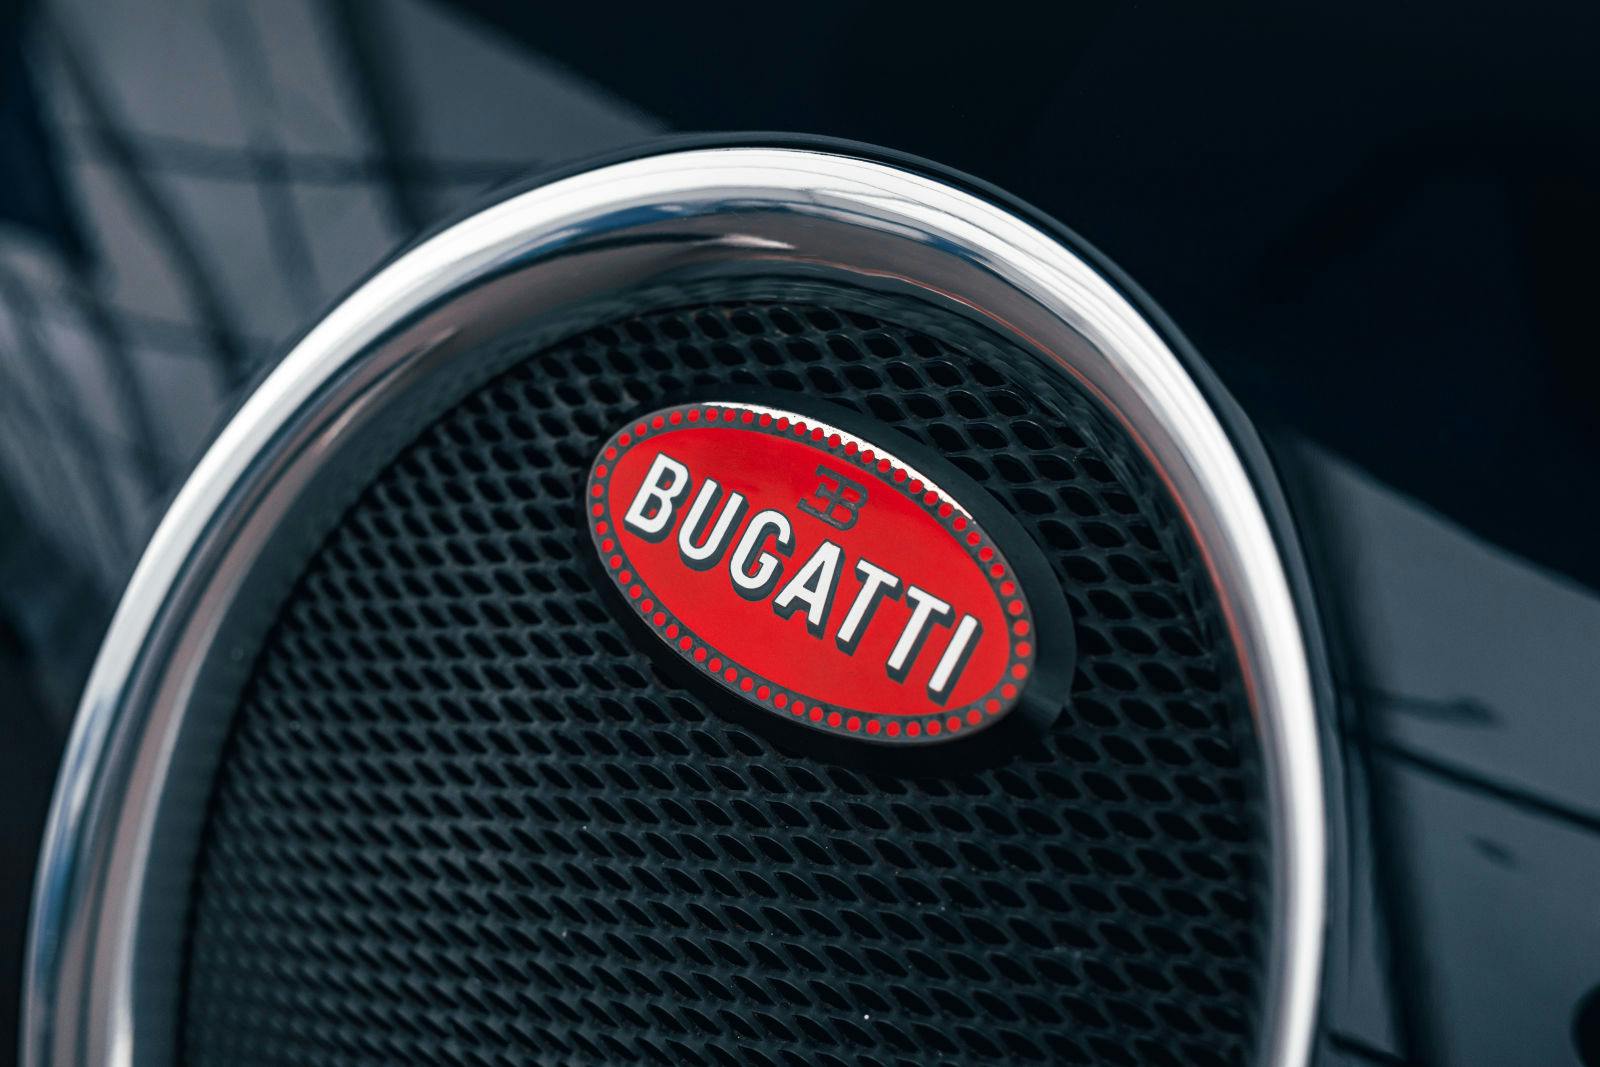 Das rote Oval der Marke fand auch in der modernen Ära Bugattis seinen Einsatz: hier am Bugatti Veyron 16.4.